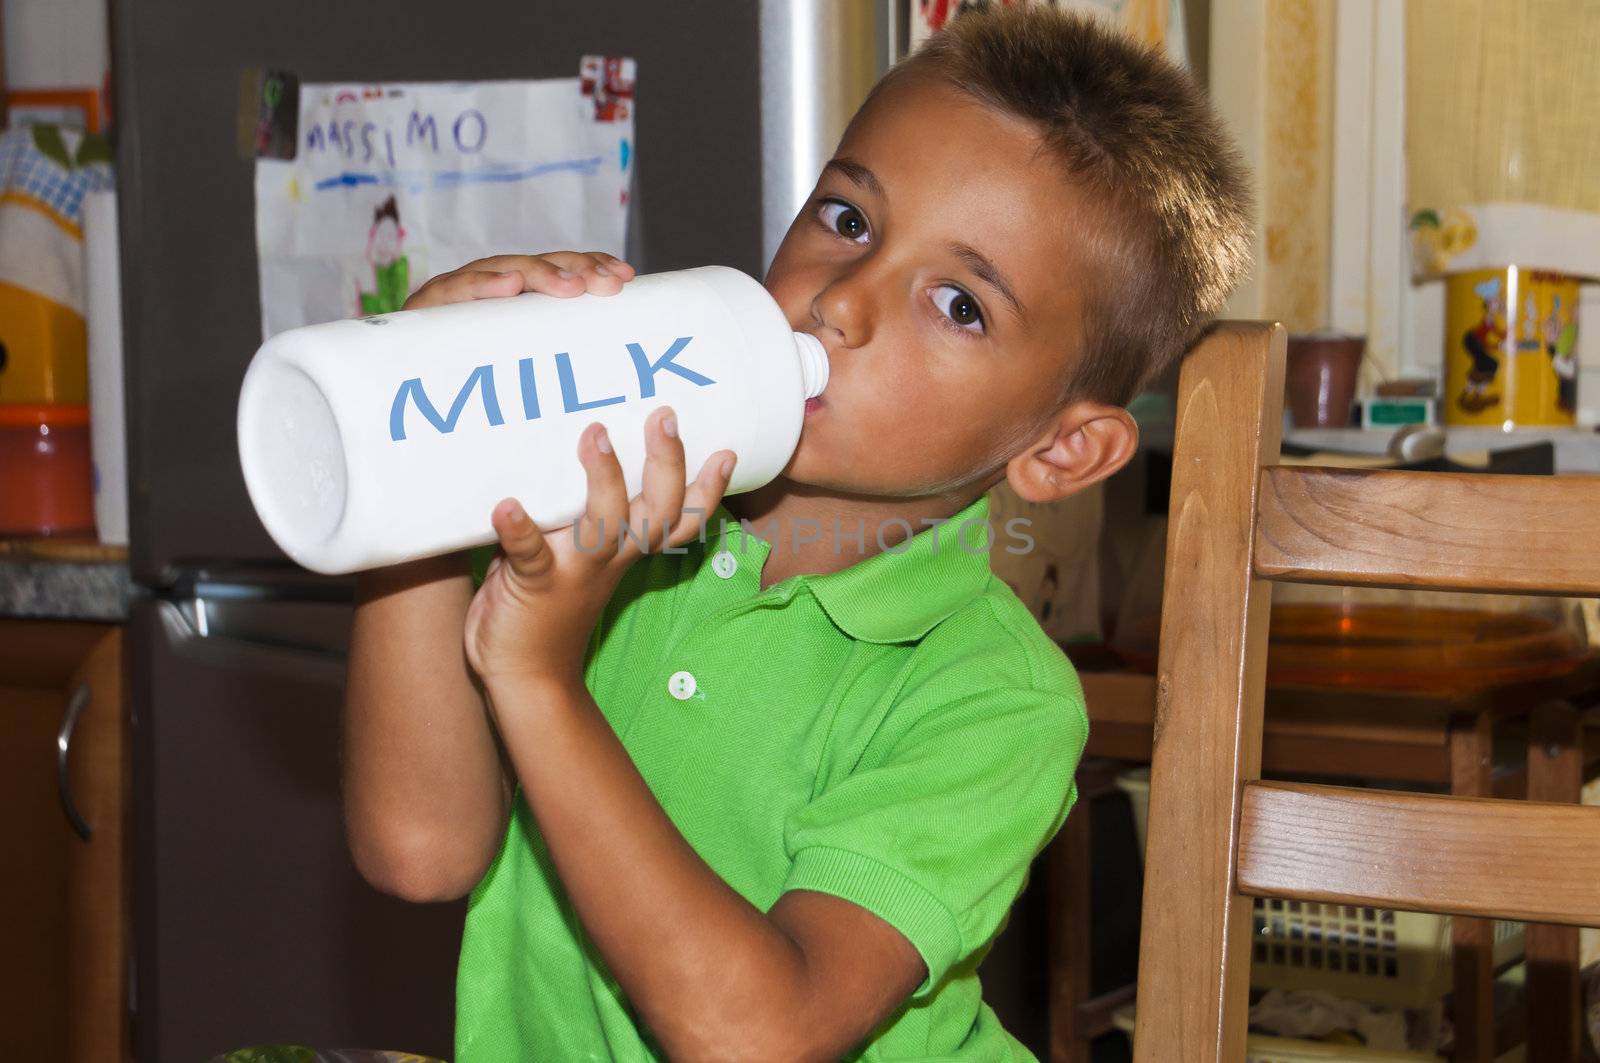 Little boy drinking milk.shot taken in the kitchen.